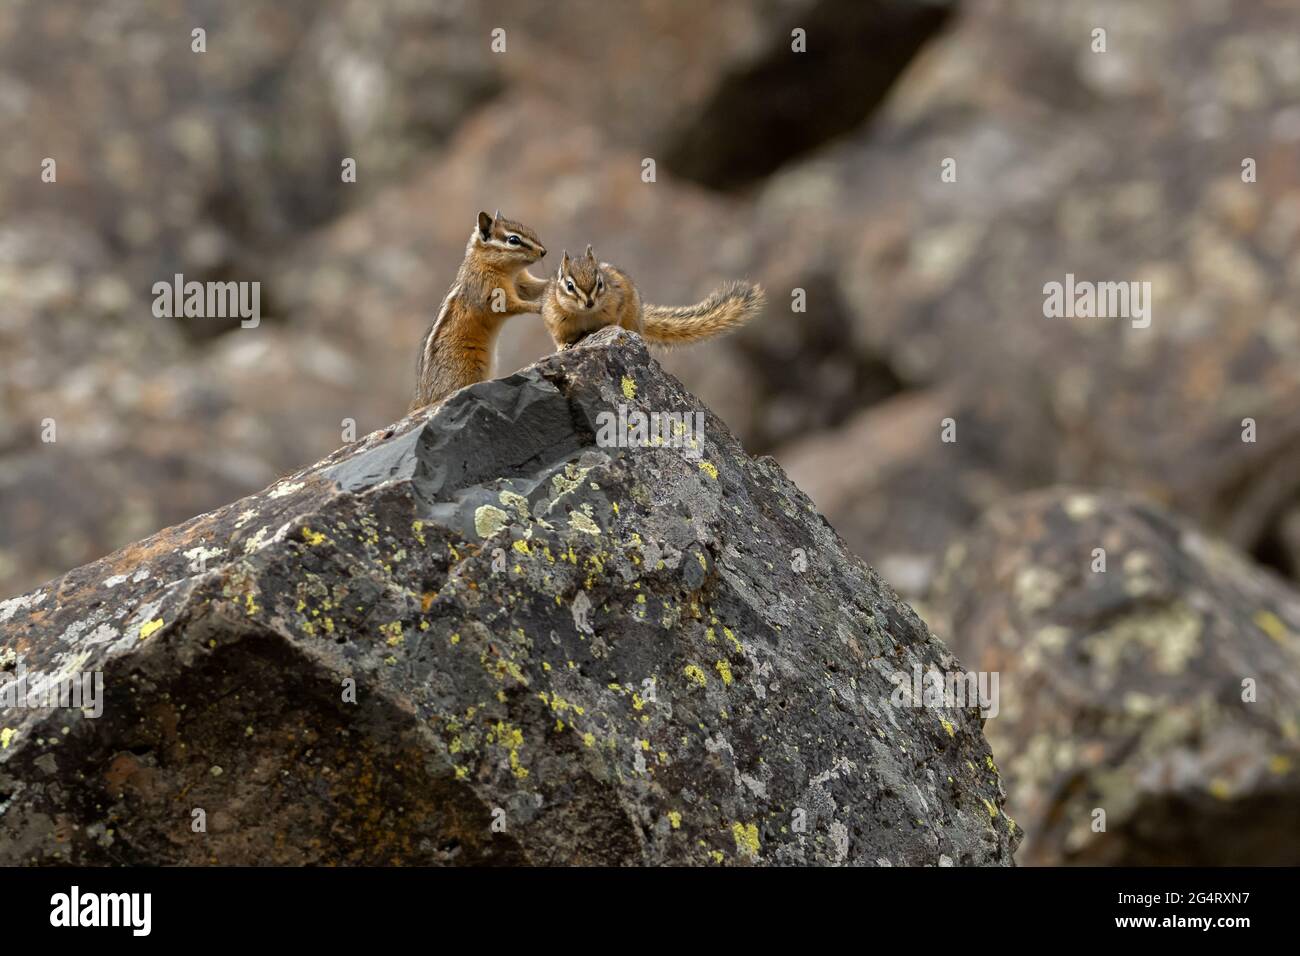 Le moindre chipmunk (Neotamias minimus) est le plus petit membre de la famille des chipmunk. Parc national de Yellowstone, Wyoming, États-Unis. Banque D'Images